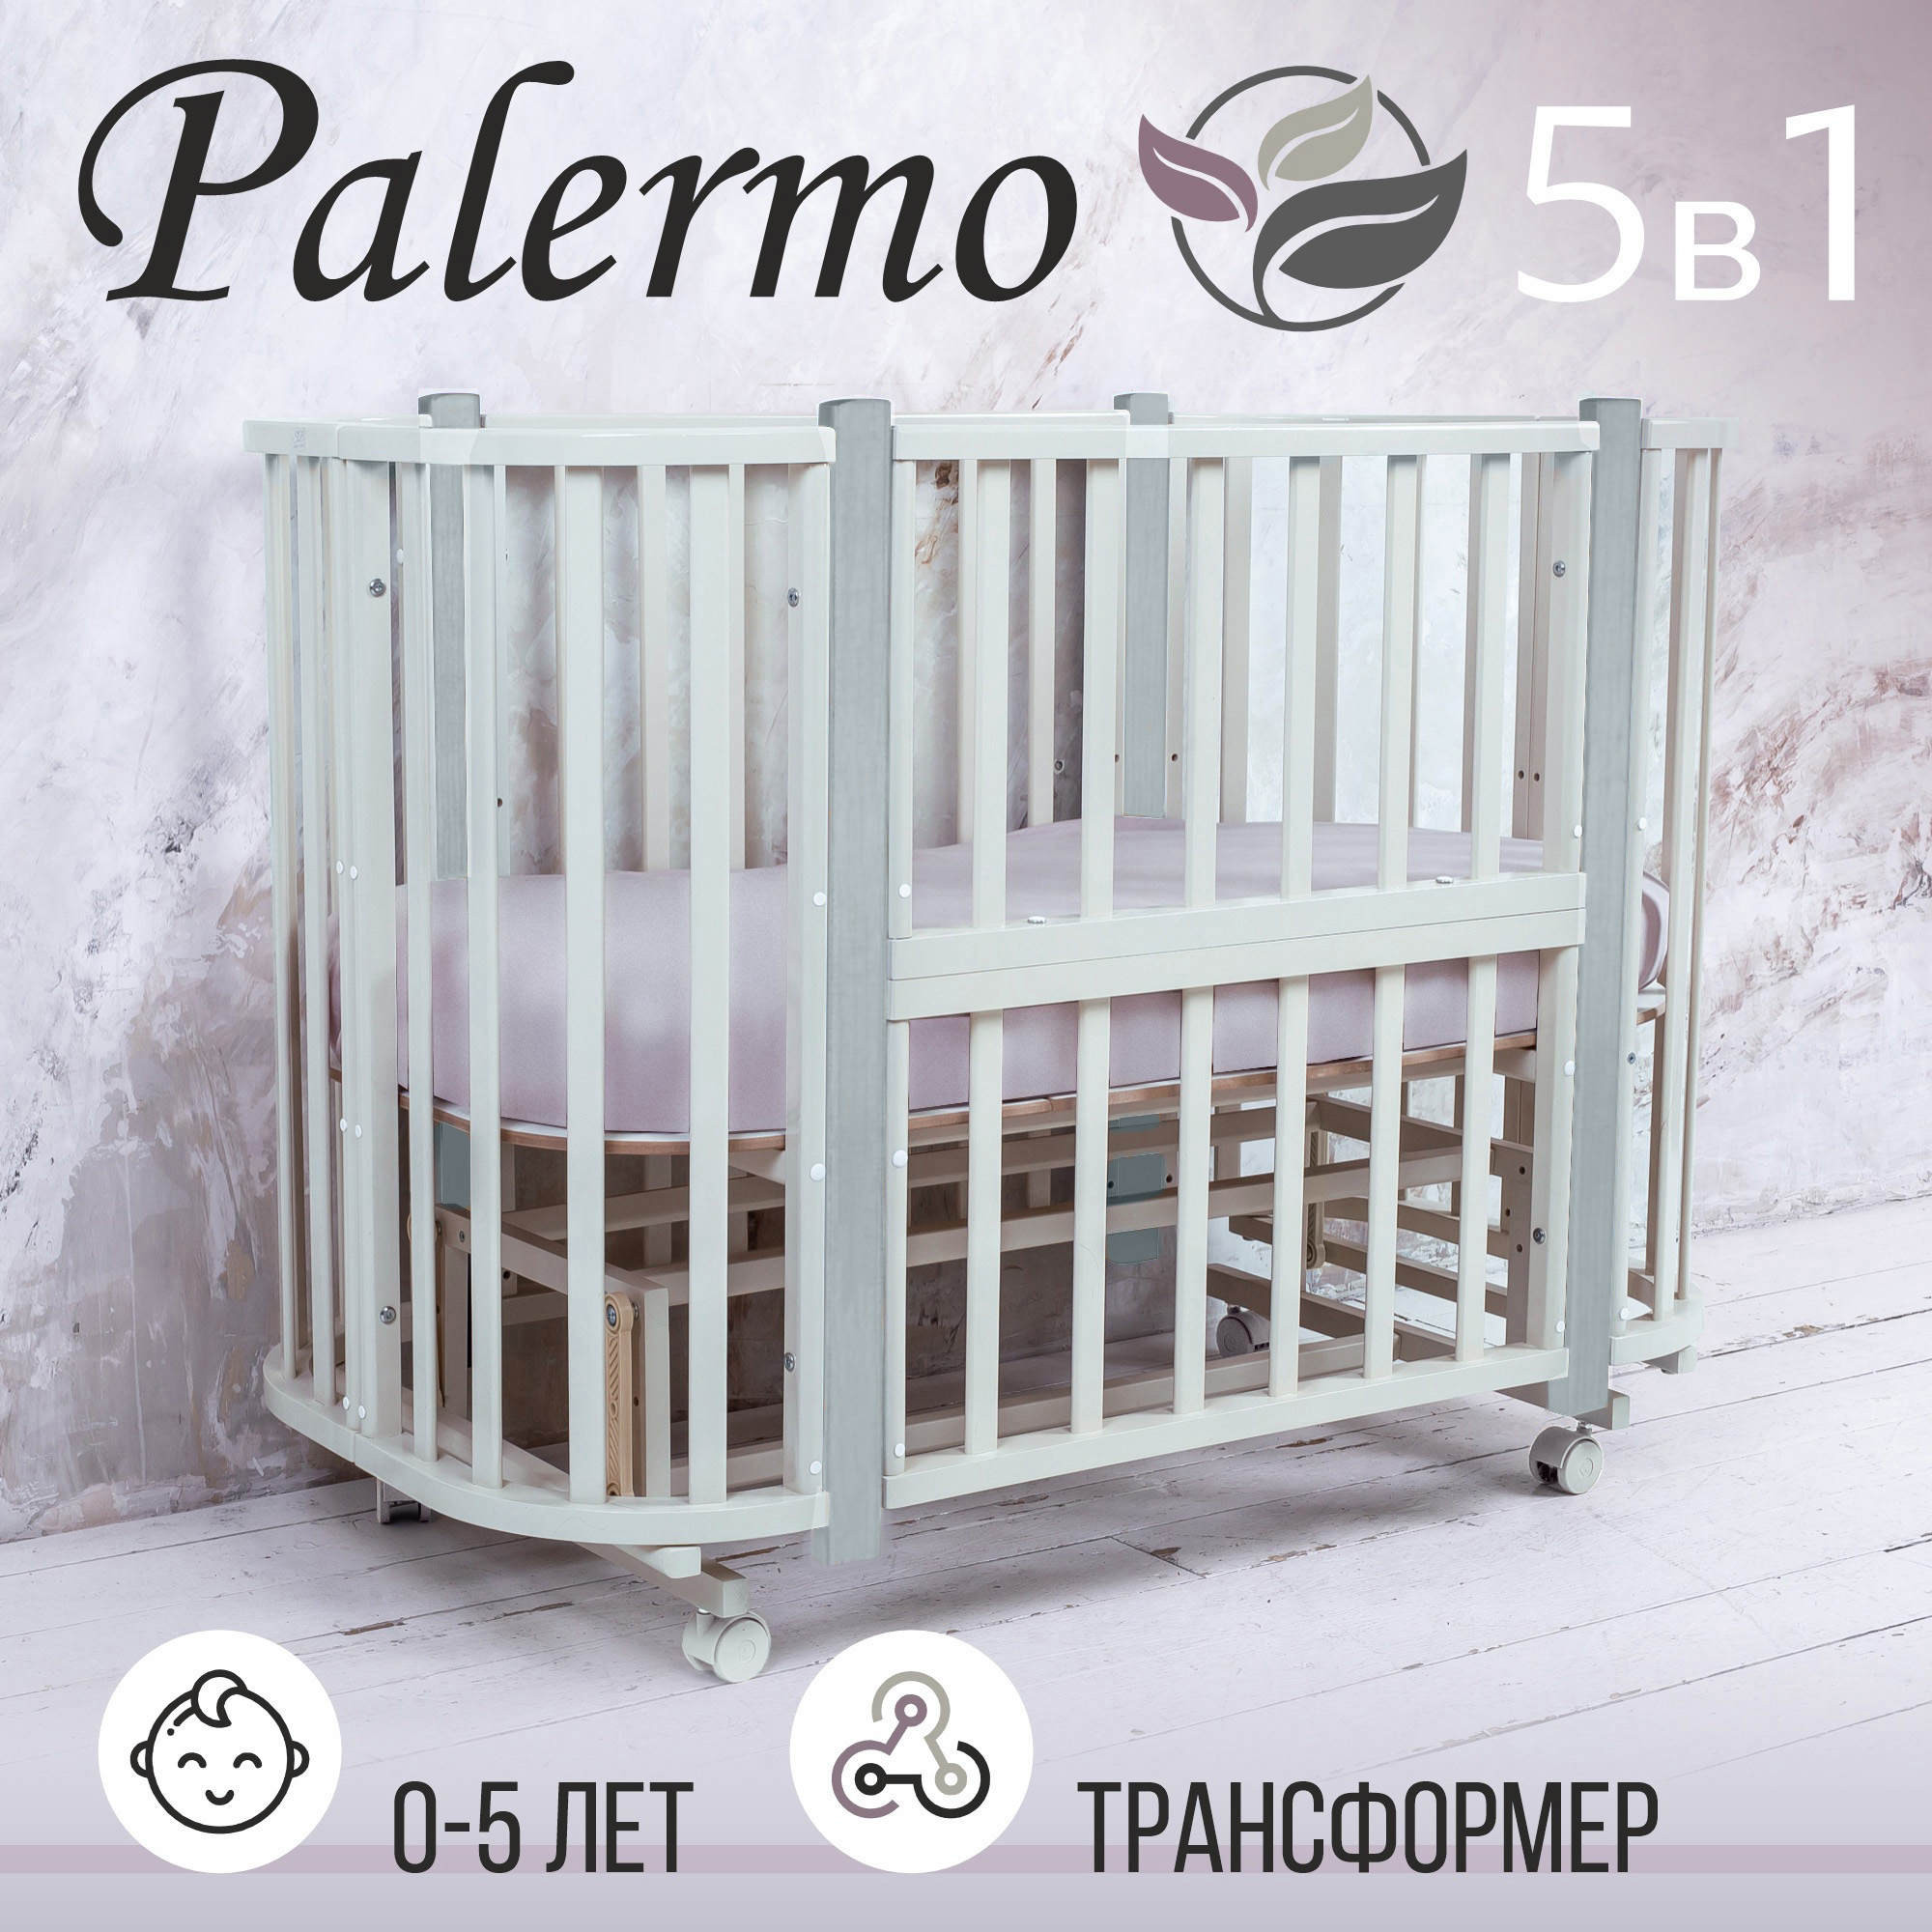 Кровать-трансформер Sweet Baby 5в1 с маятником Palermo Bianco/Grigio (белый/серый) кровать трансформер sweet baby 5в1 с маятником palermo bianco naturale белый натуральный